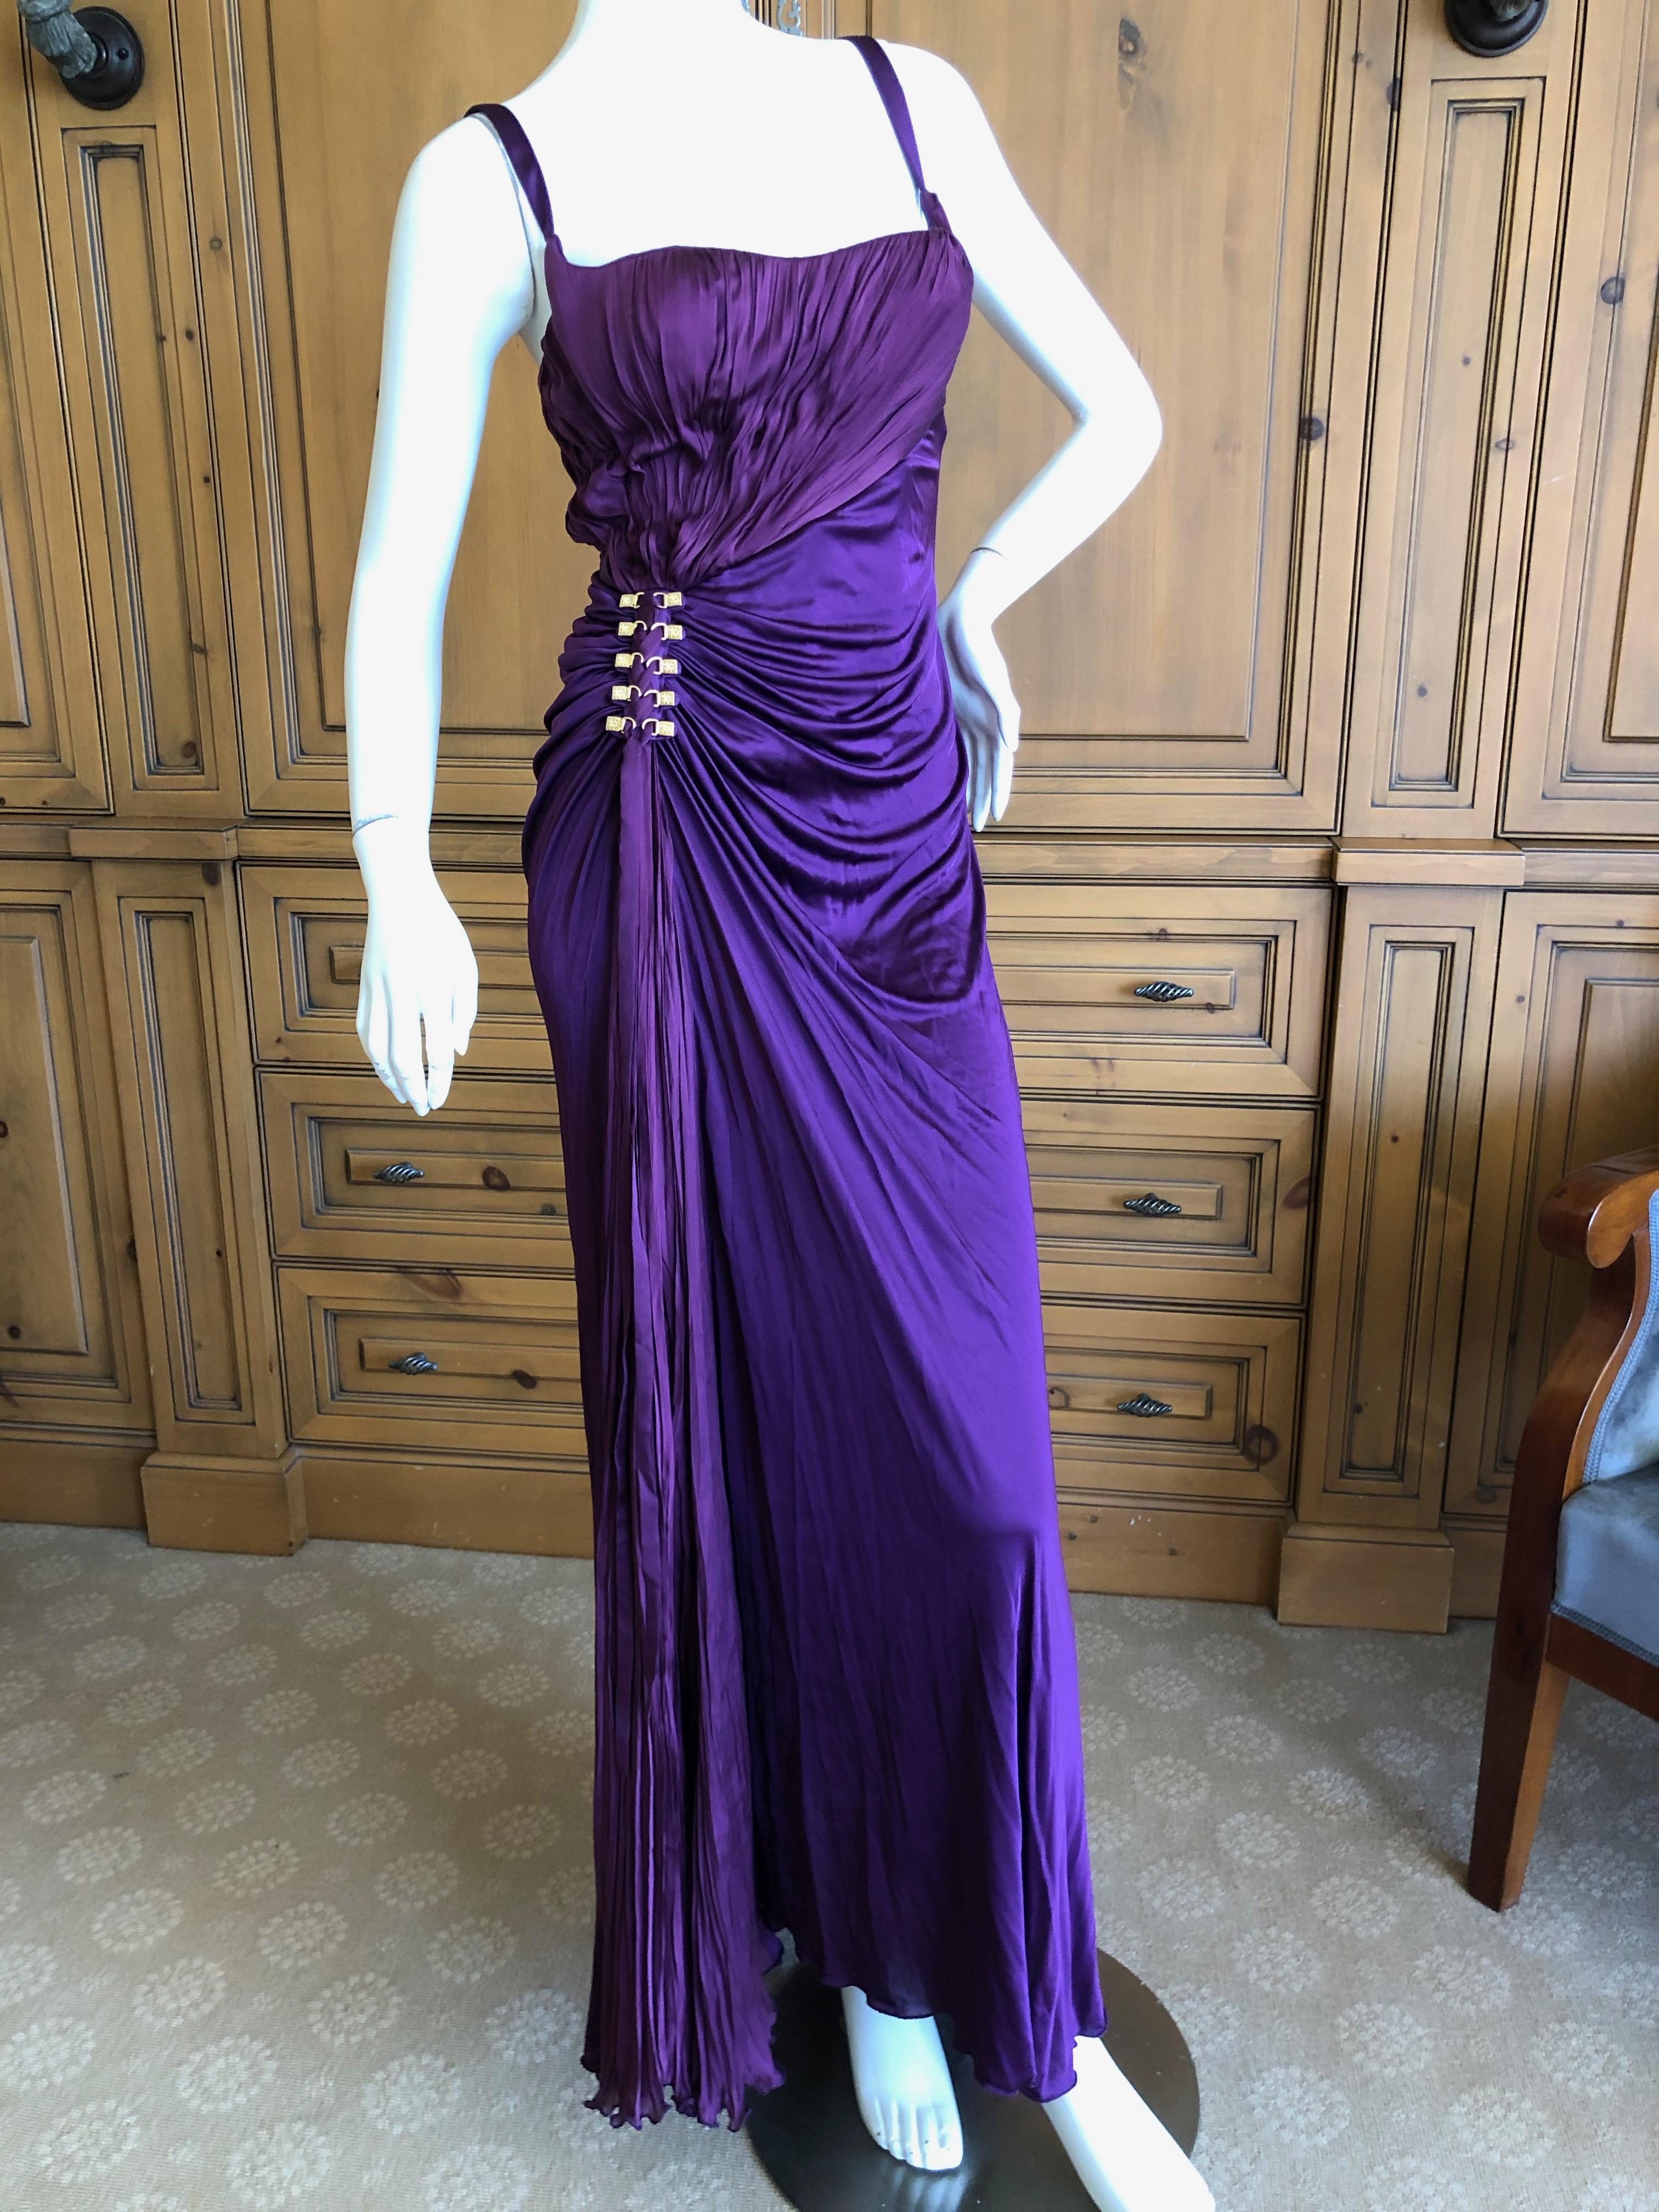 90s purple dress